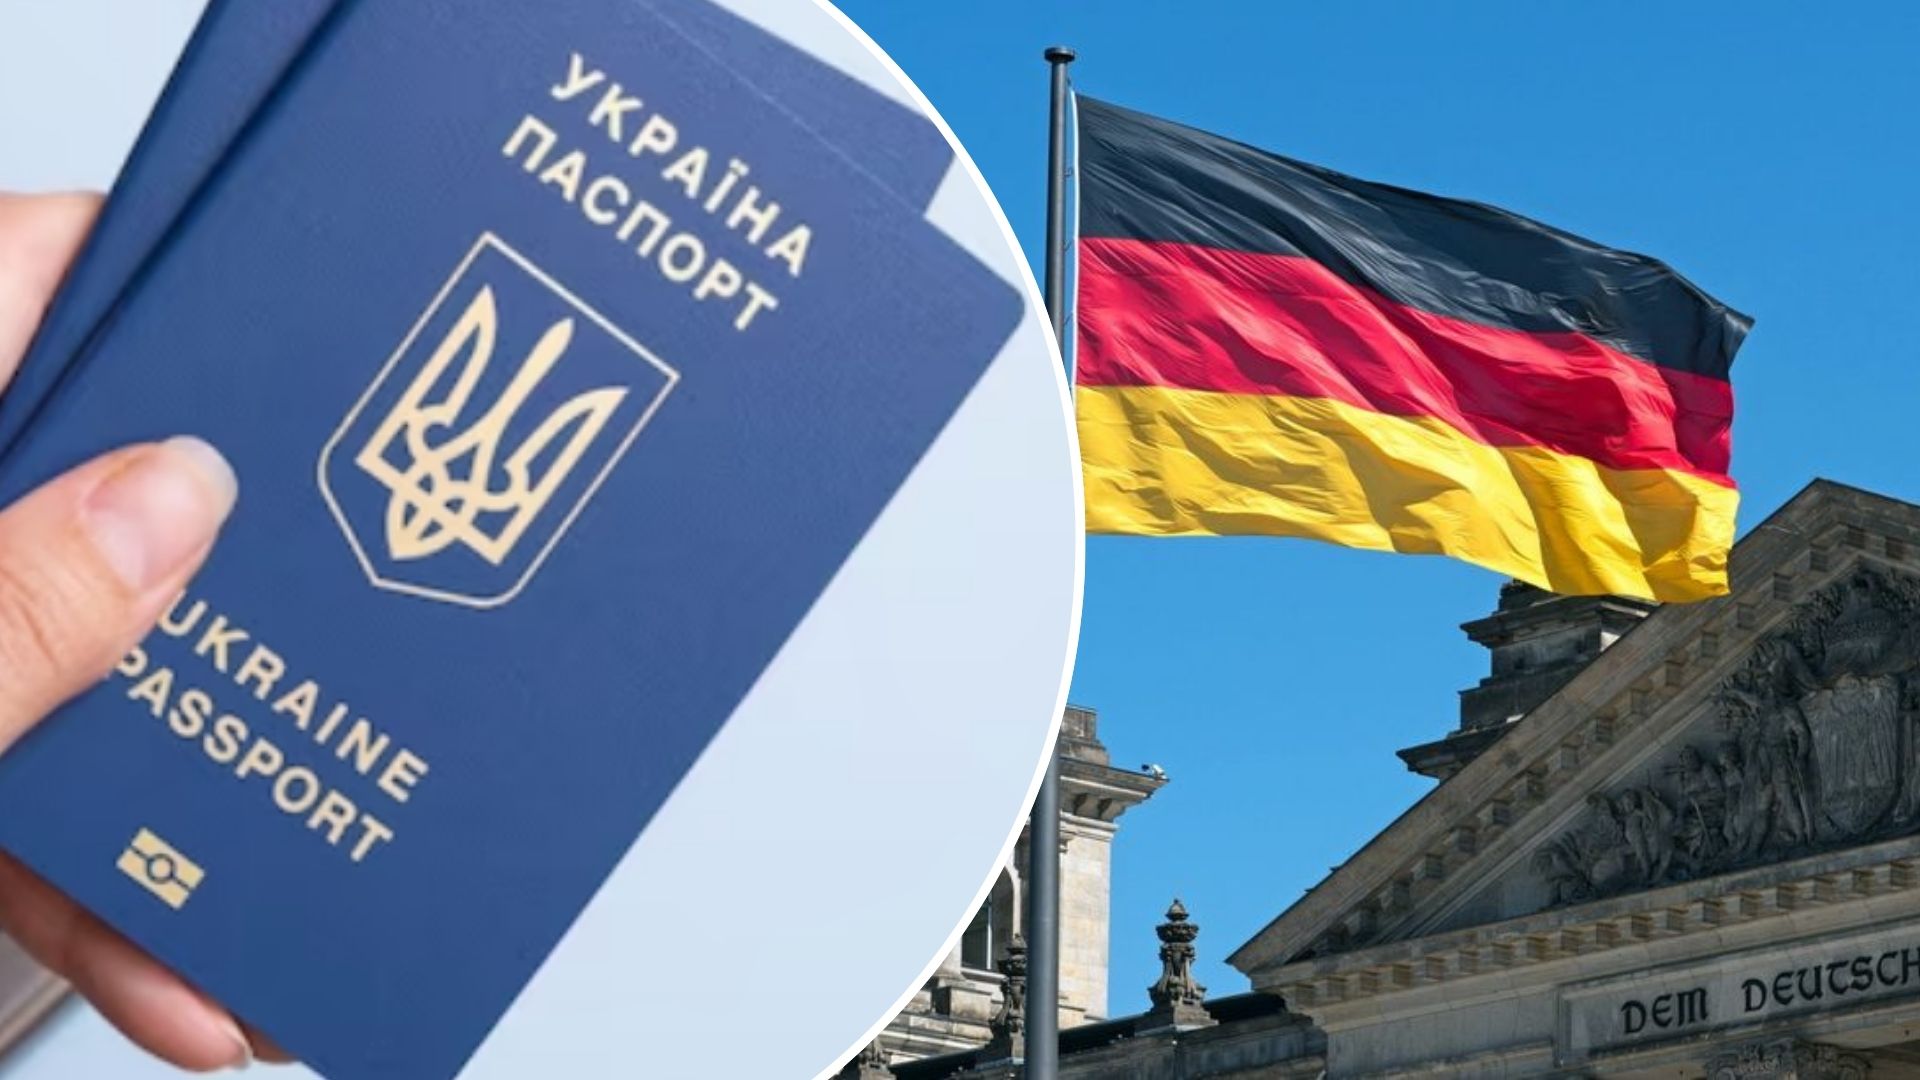 Україна тимчасово призупинила консульське обслуговування чоловікам призовного віку, які перебувають за кордоном. Незважаючи на це, їх статус біженців у Німеччині залишиться незмінним.